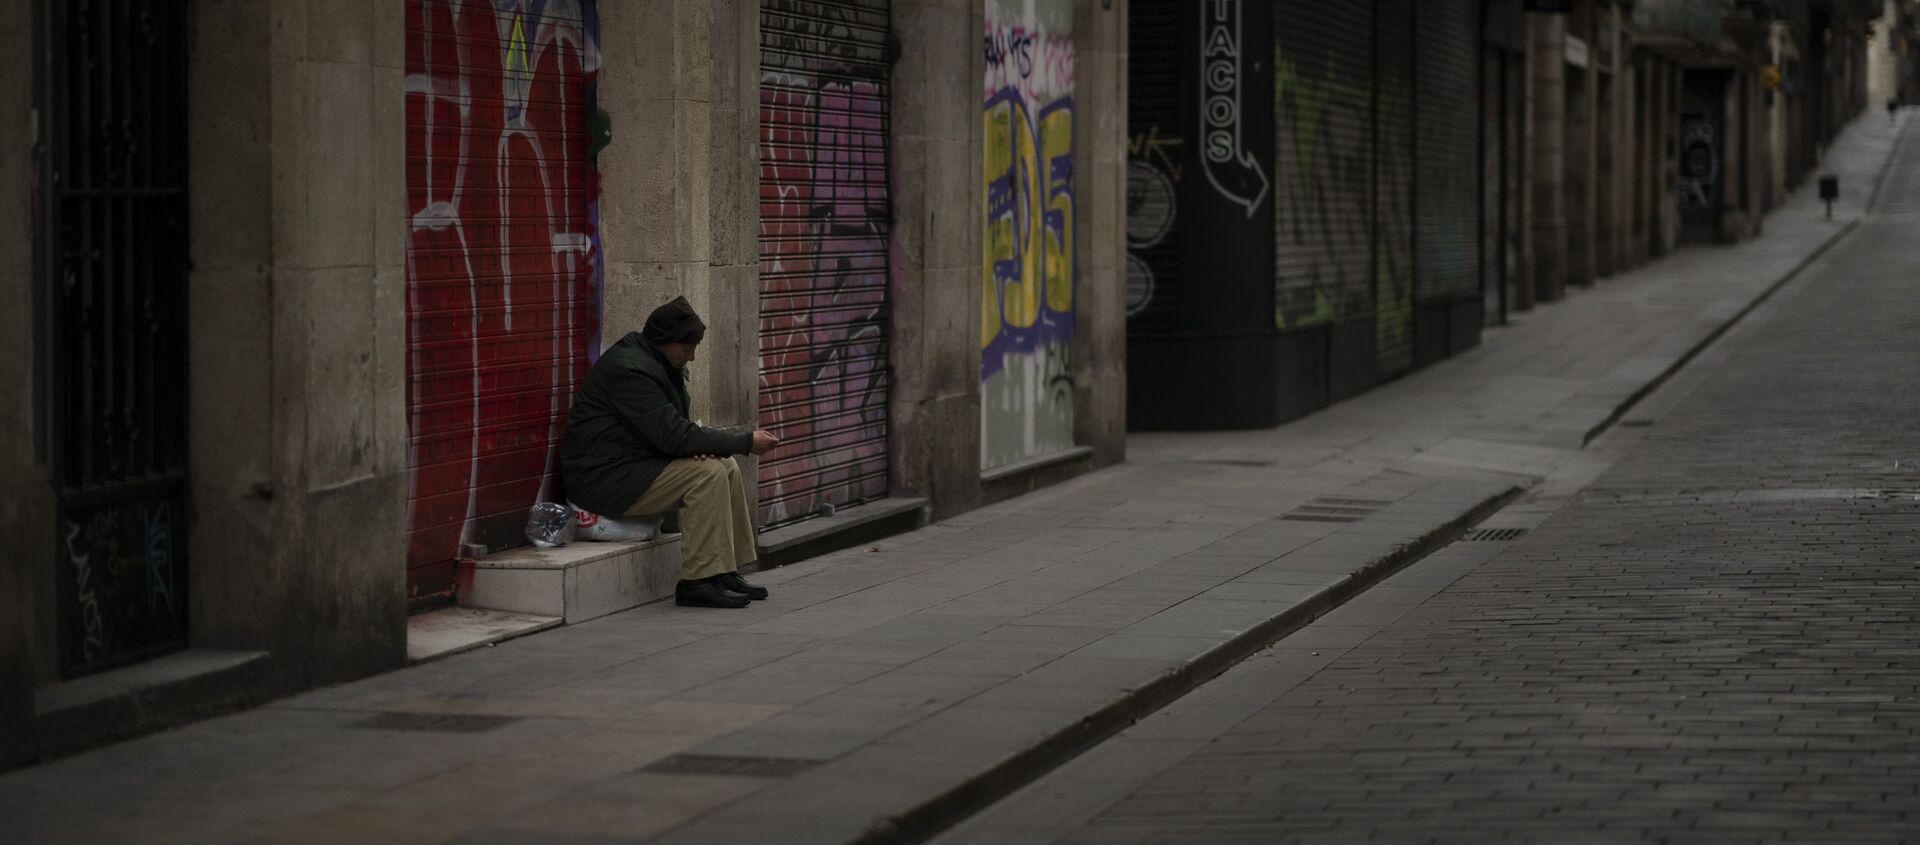 José Ramón, de 60 años, pide limosna en una calle vacía de Barcelona. - Sputnik Mundo, 1920, 25.01.2021